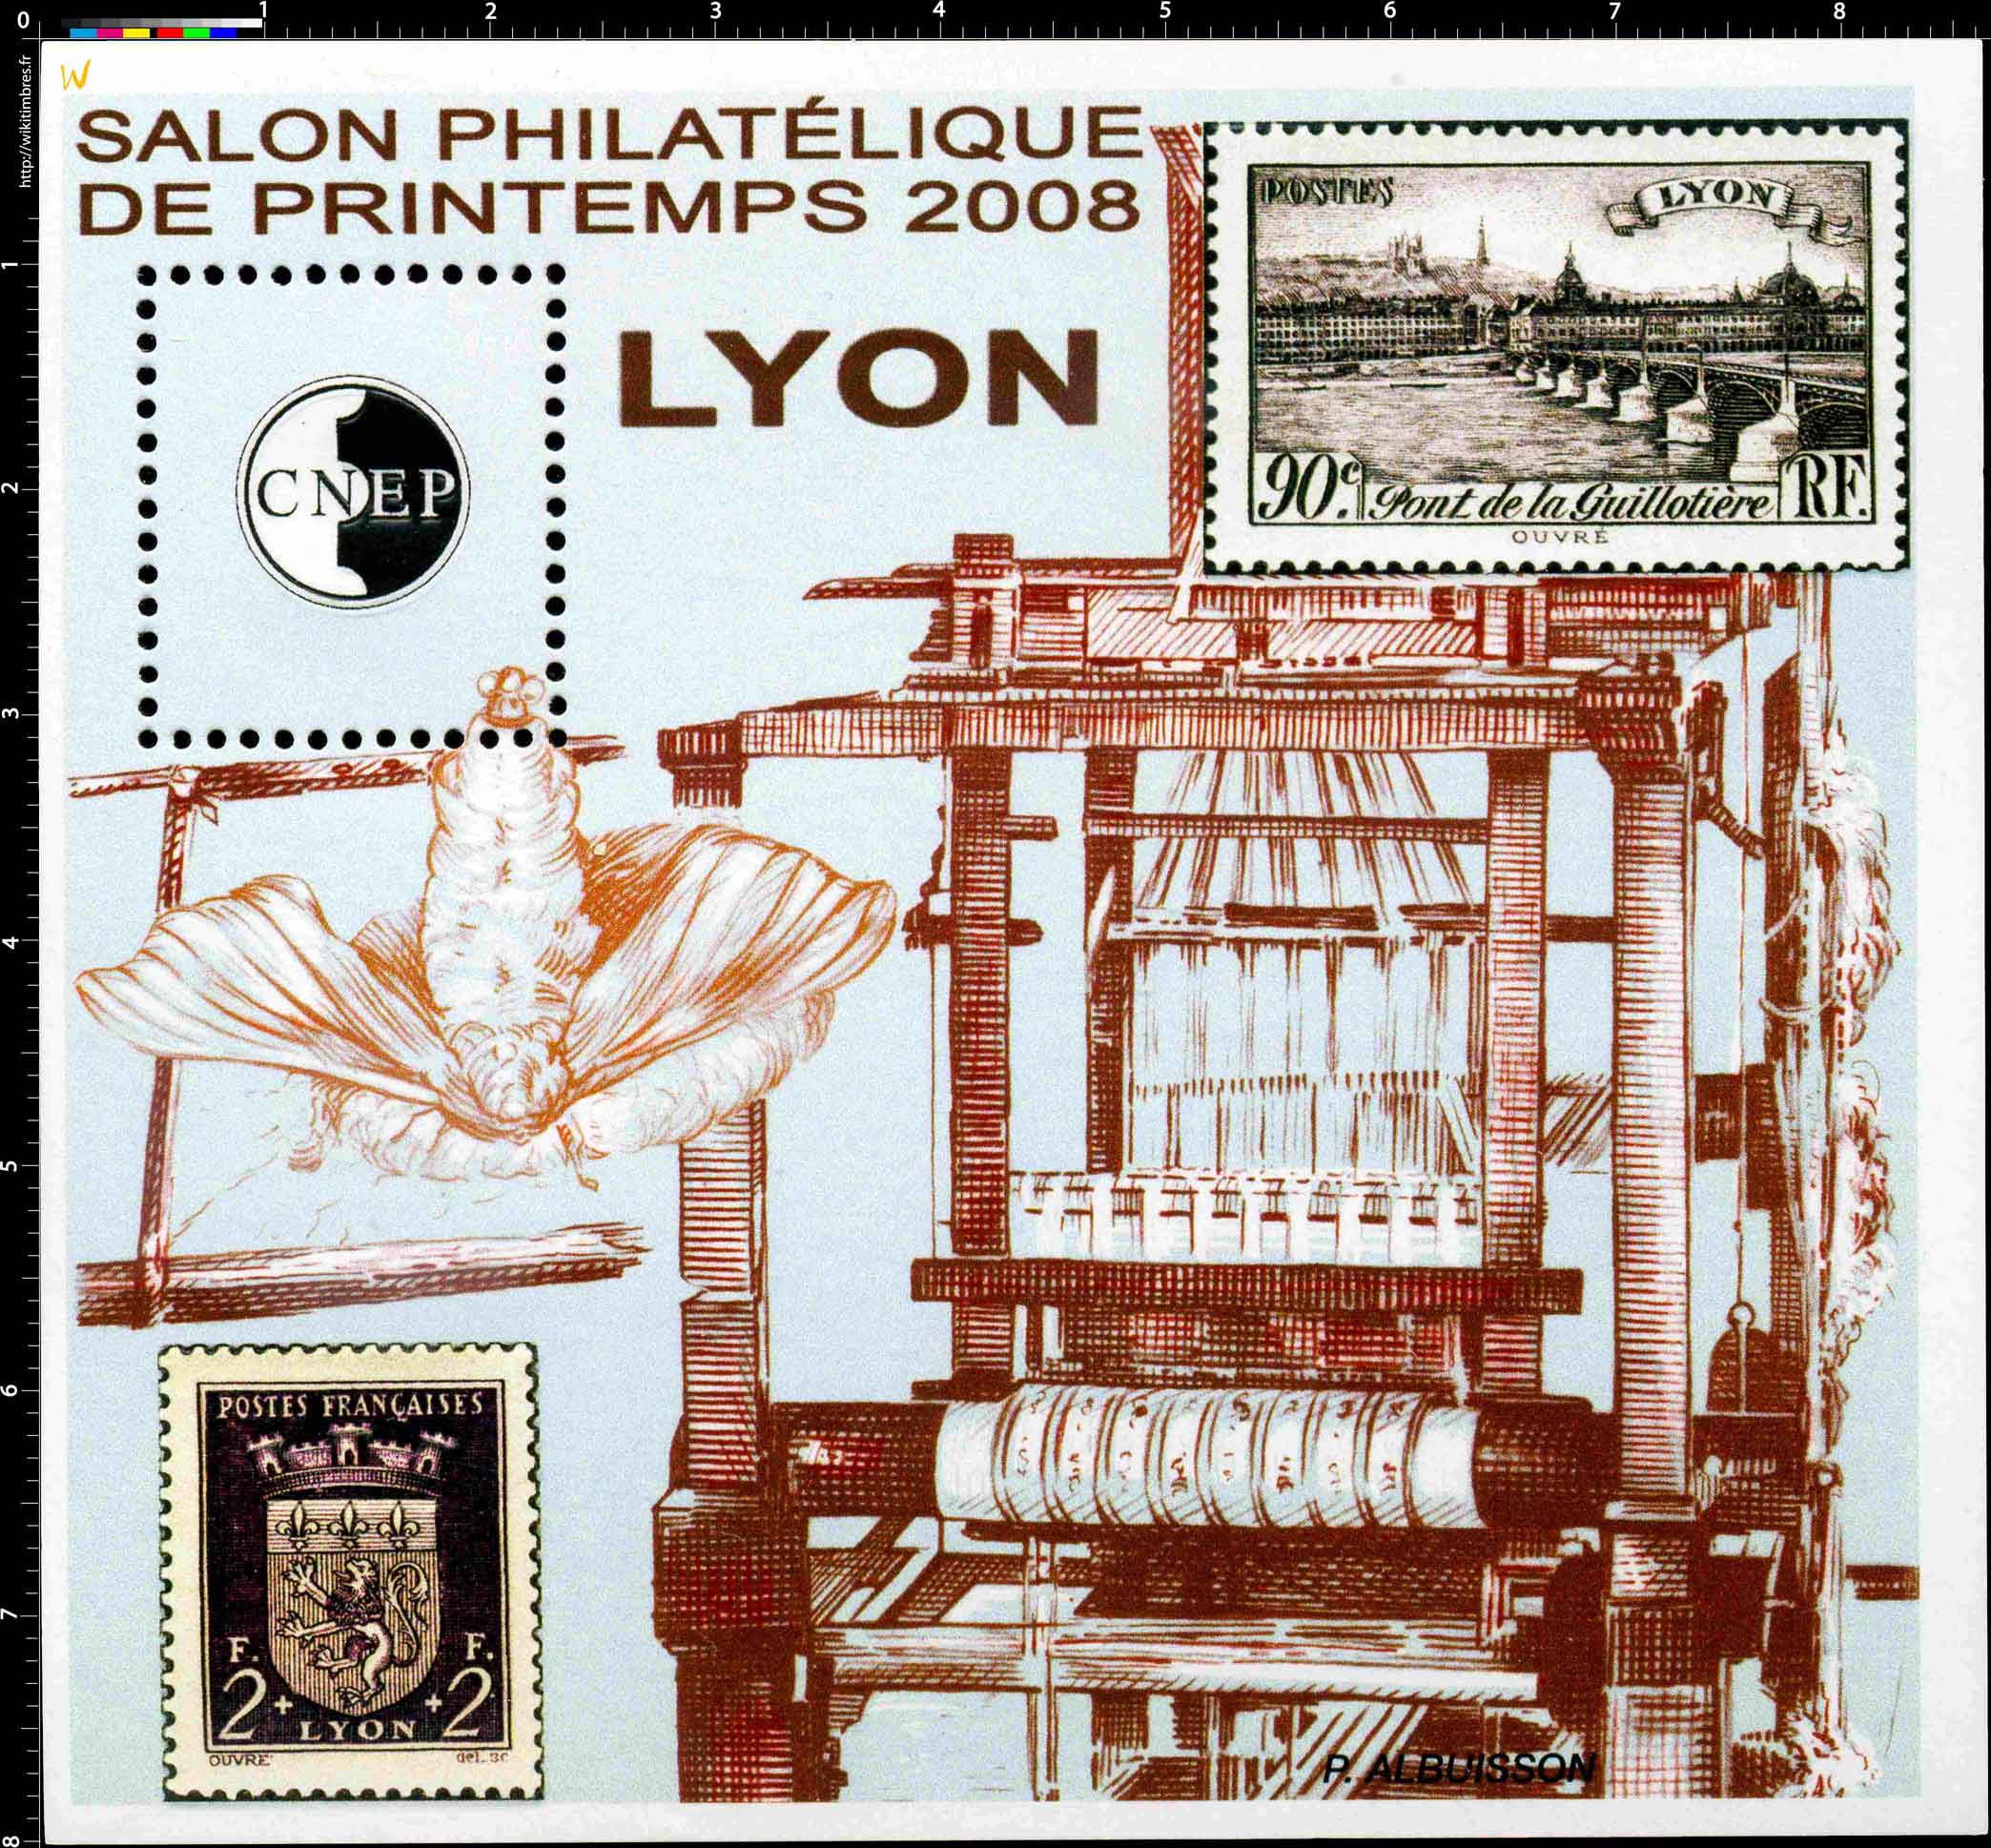 2008 Salon philatélique de printemps Lyon CNEP